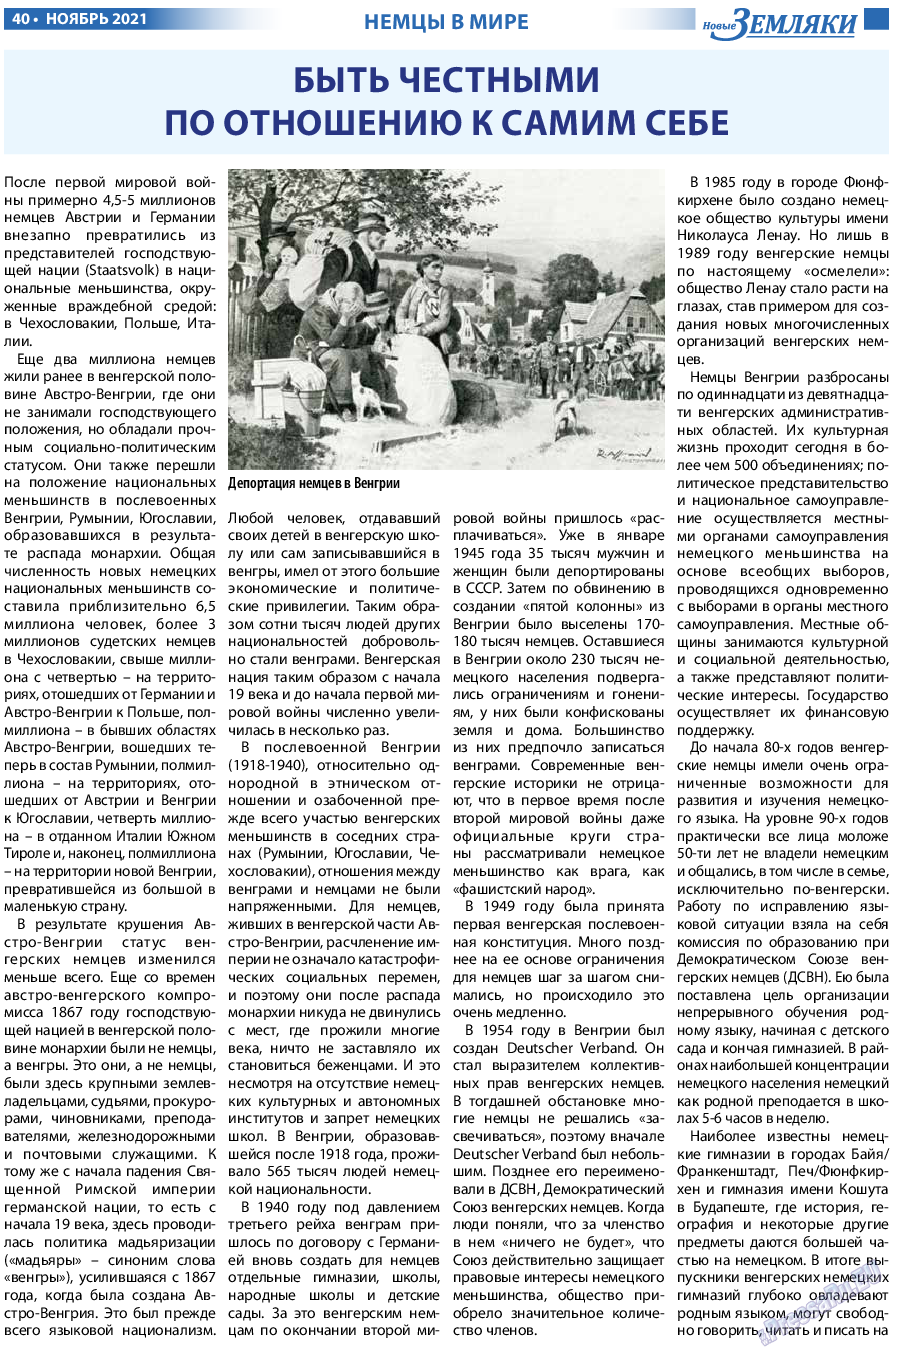 Новые Земляки, газета. 2021 №11 стр.40